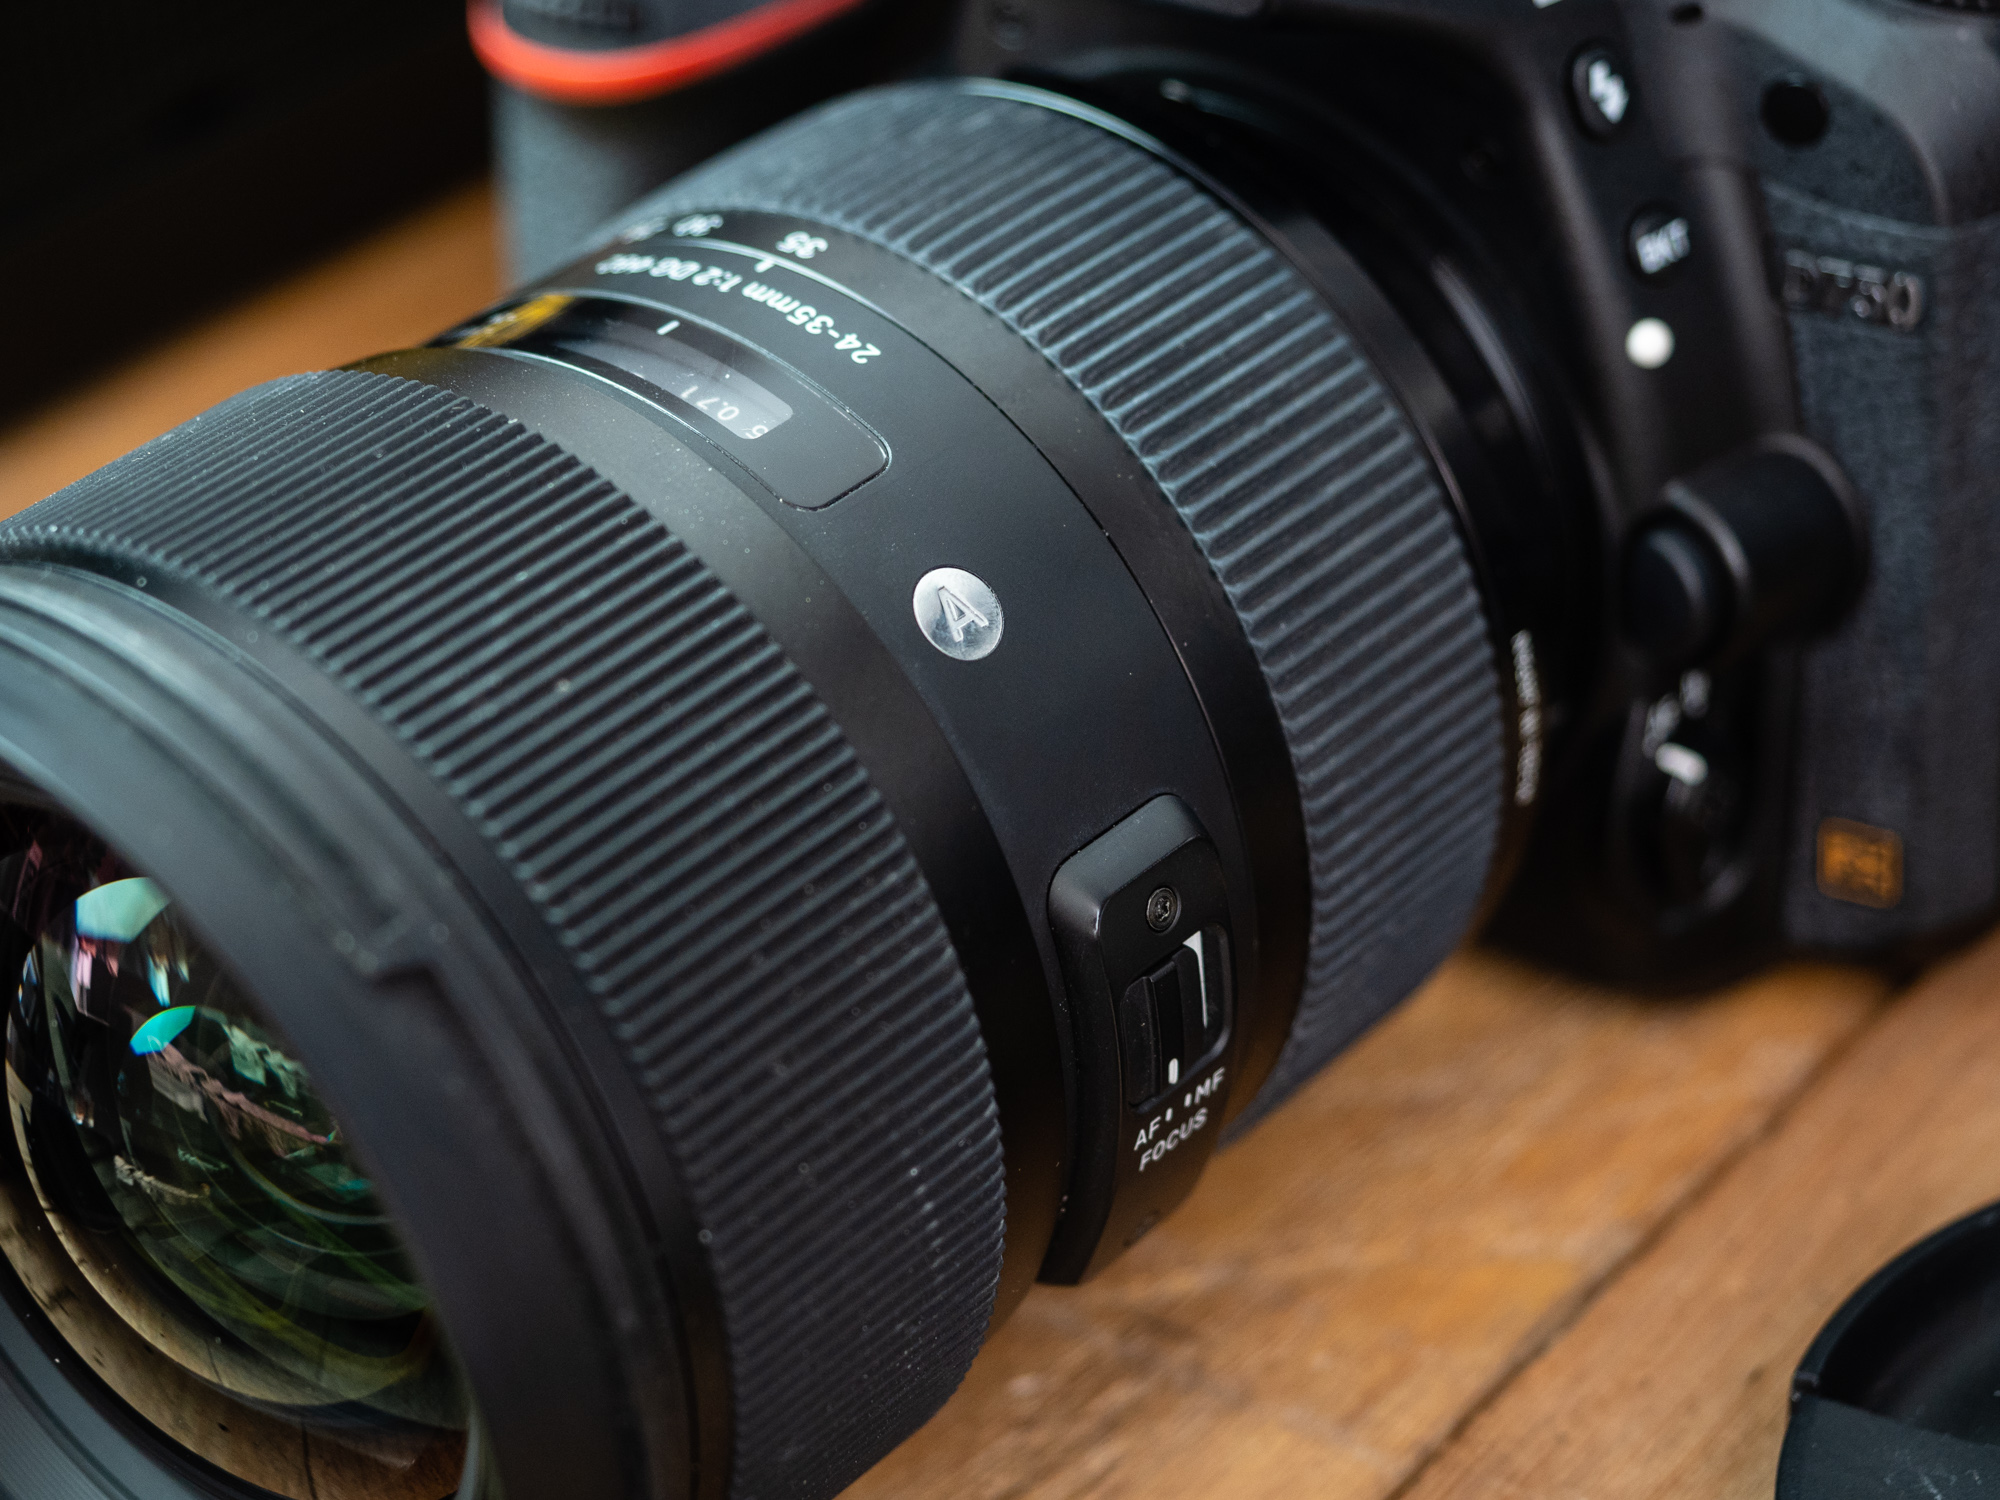 Мы использовали объективы на байонете Nikon в сочетании с двумя полнокадровыми корпусами - D750 и D610